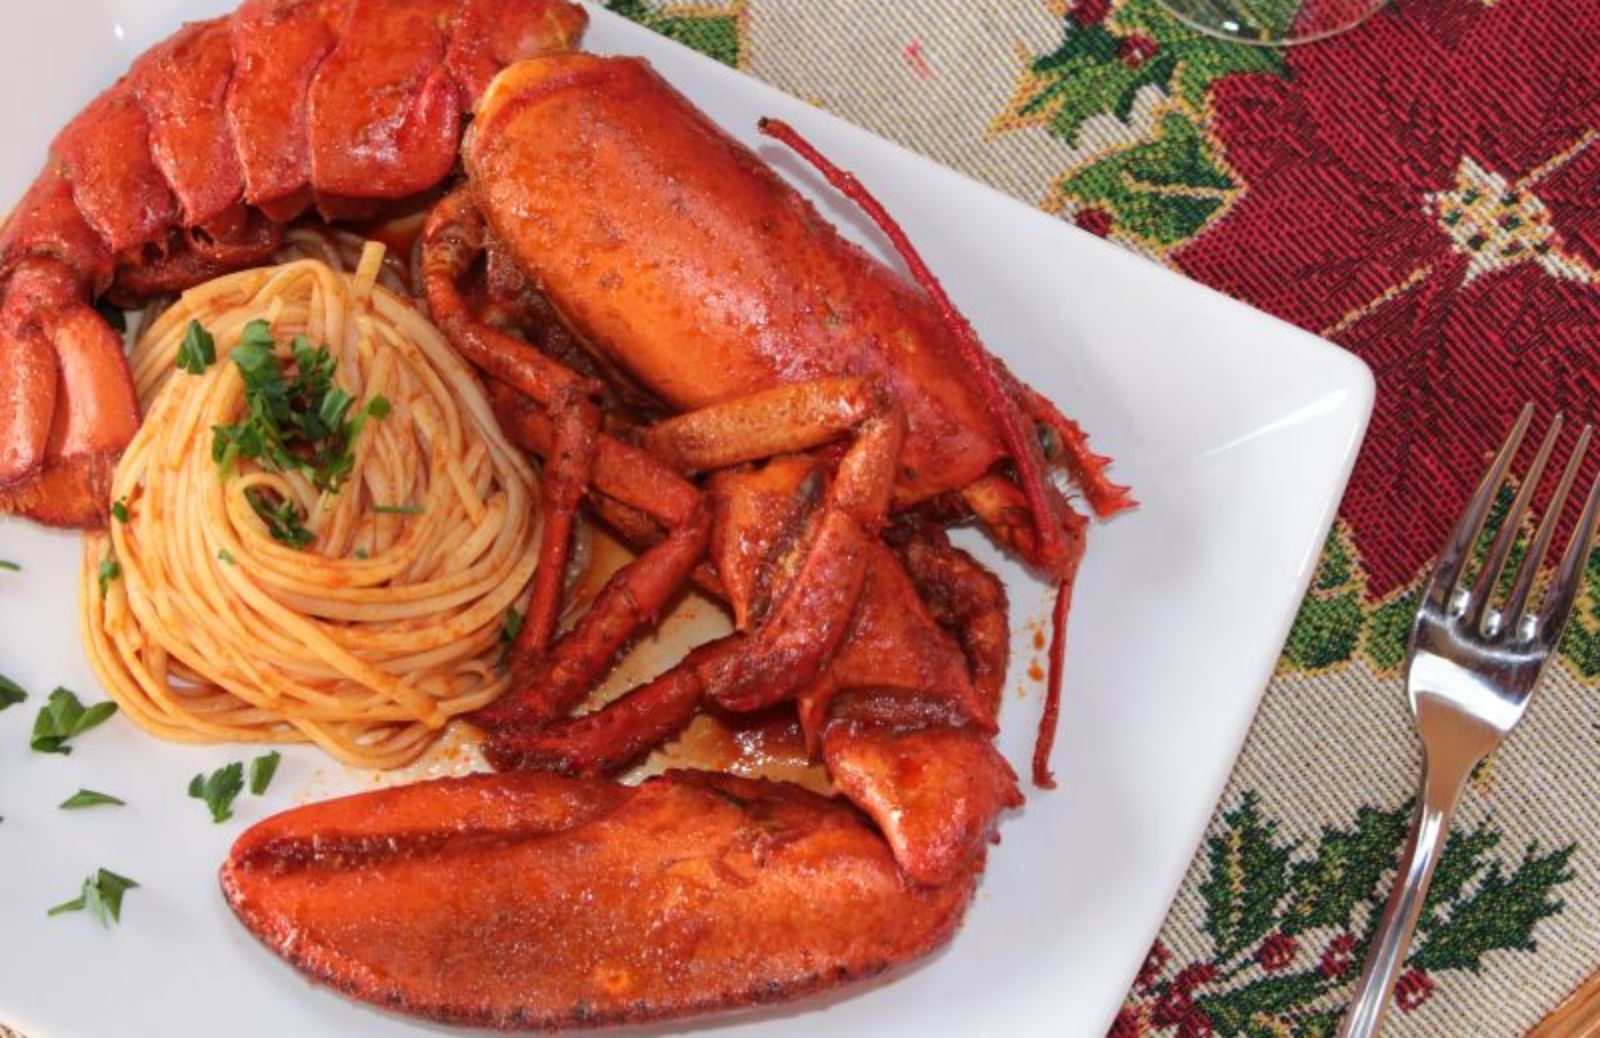 Spaghetti all'astice in bellavista: il primo piatto per la vigilia di Natale